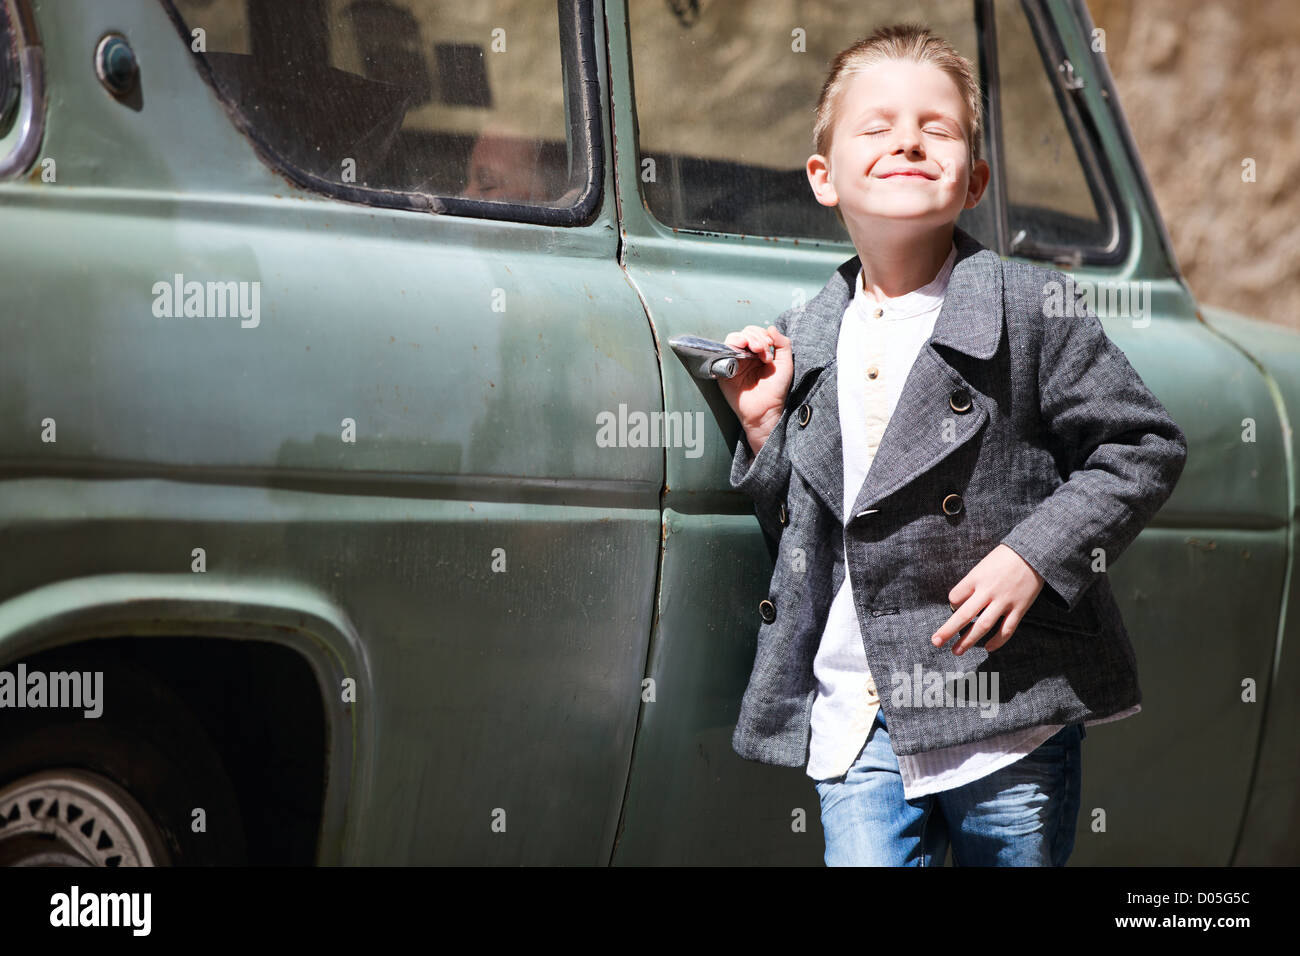 Песни мальчик на машине. Мальчик около машины. Машина мальчик стиль. Фото: мальчишки на автомобилях. Парень с ребёнком с мальчиком возле машины.